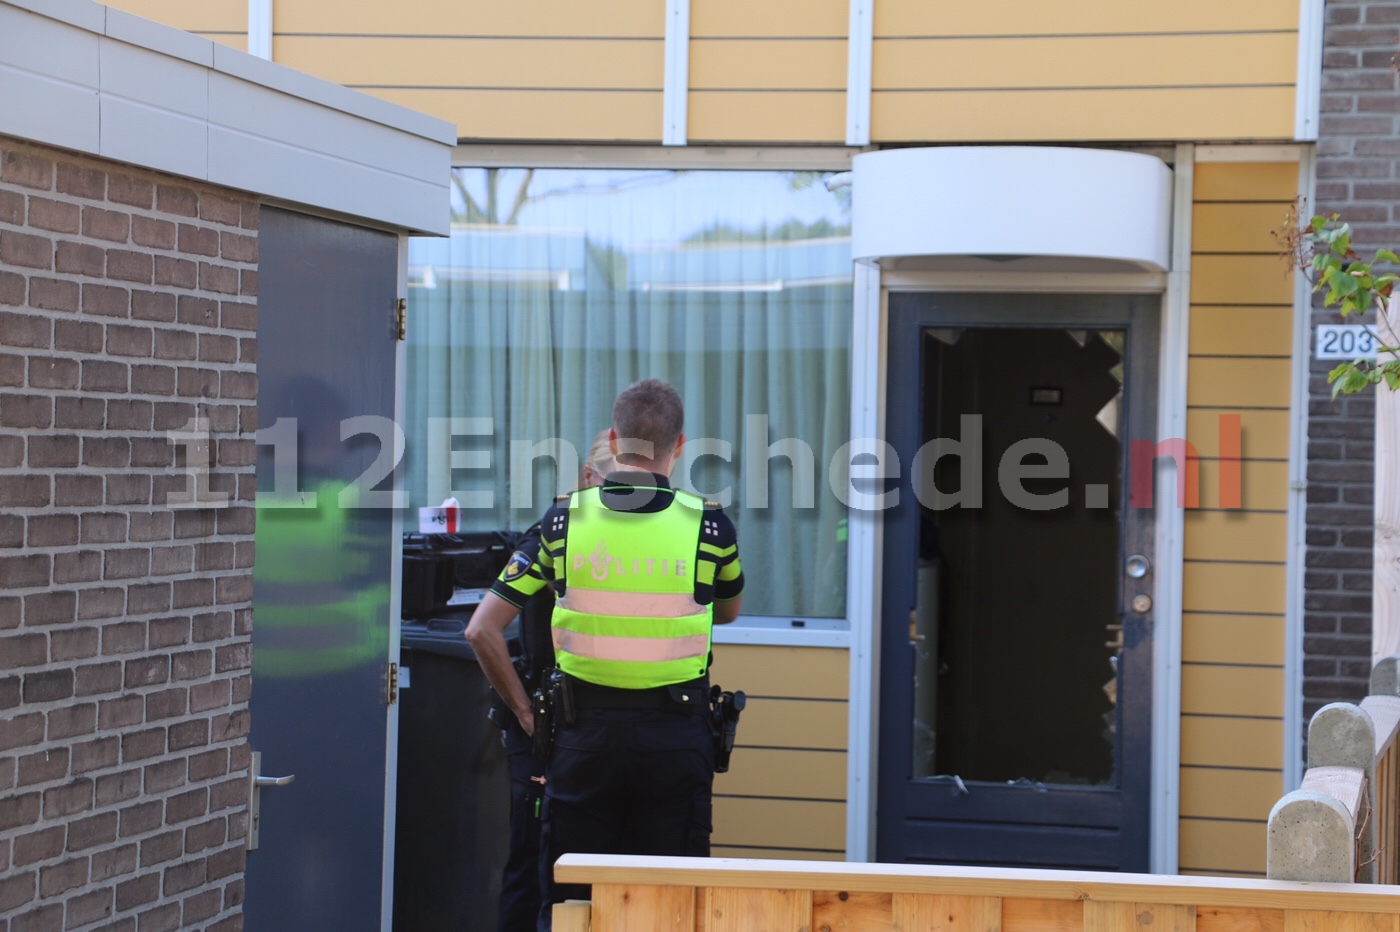 UPDATE: Politie zoekt getuigen schietincident Enschede; hennepkwekerij aangetroffen